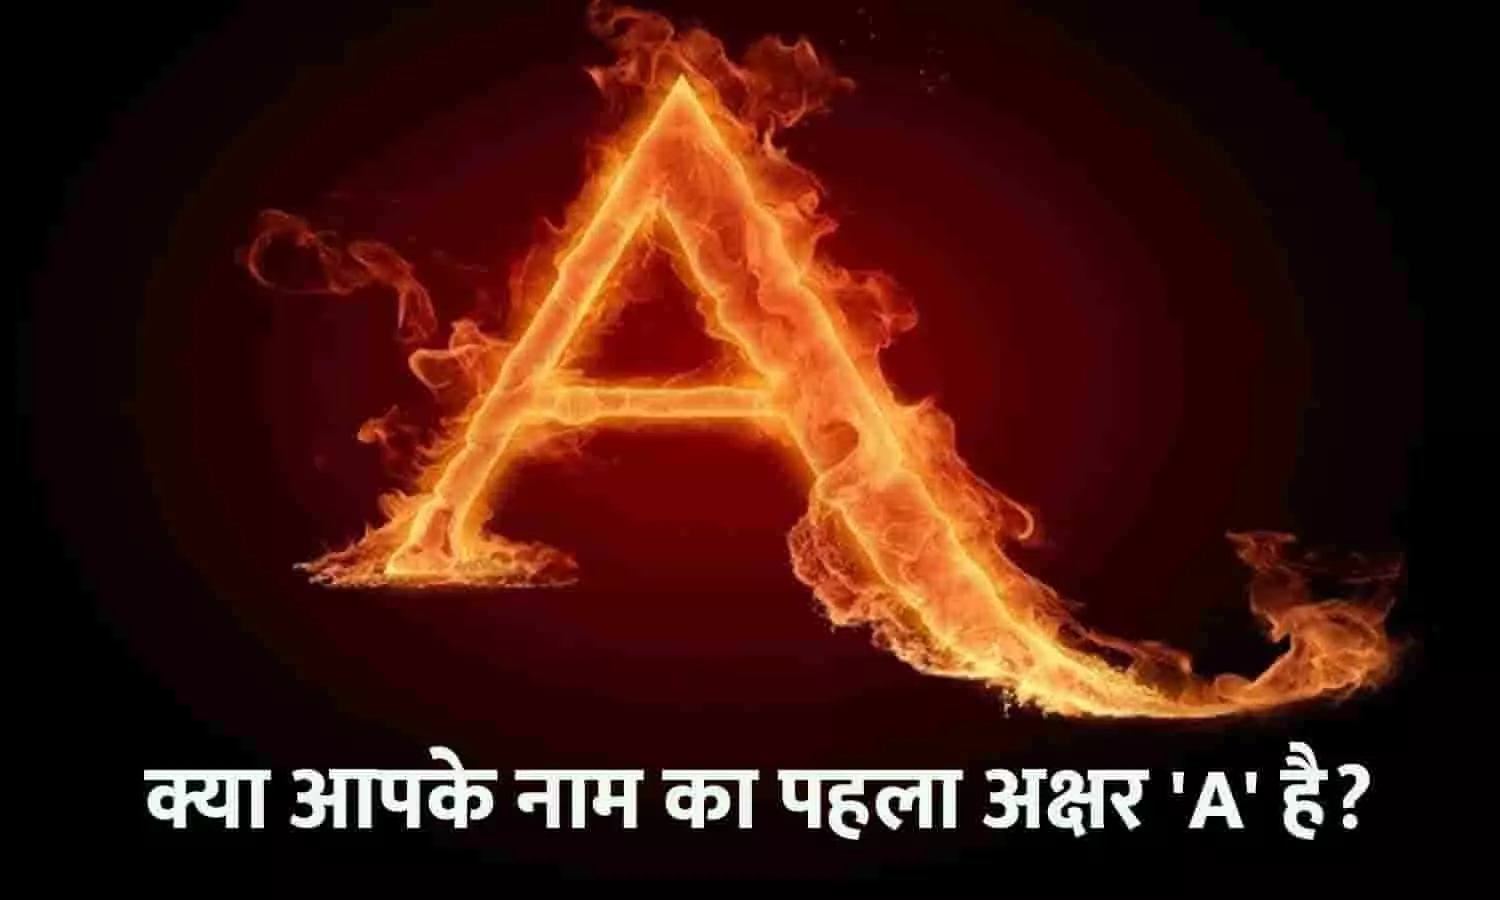 A Letter Name Personality In Hindi: अगर आपके नाम का पहला अक्षर A है, तो फटाफट जाने